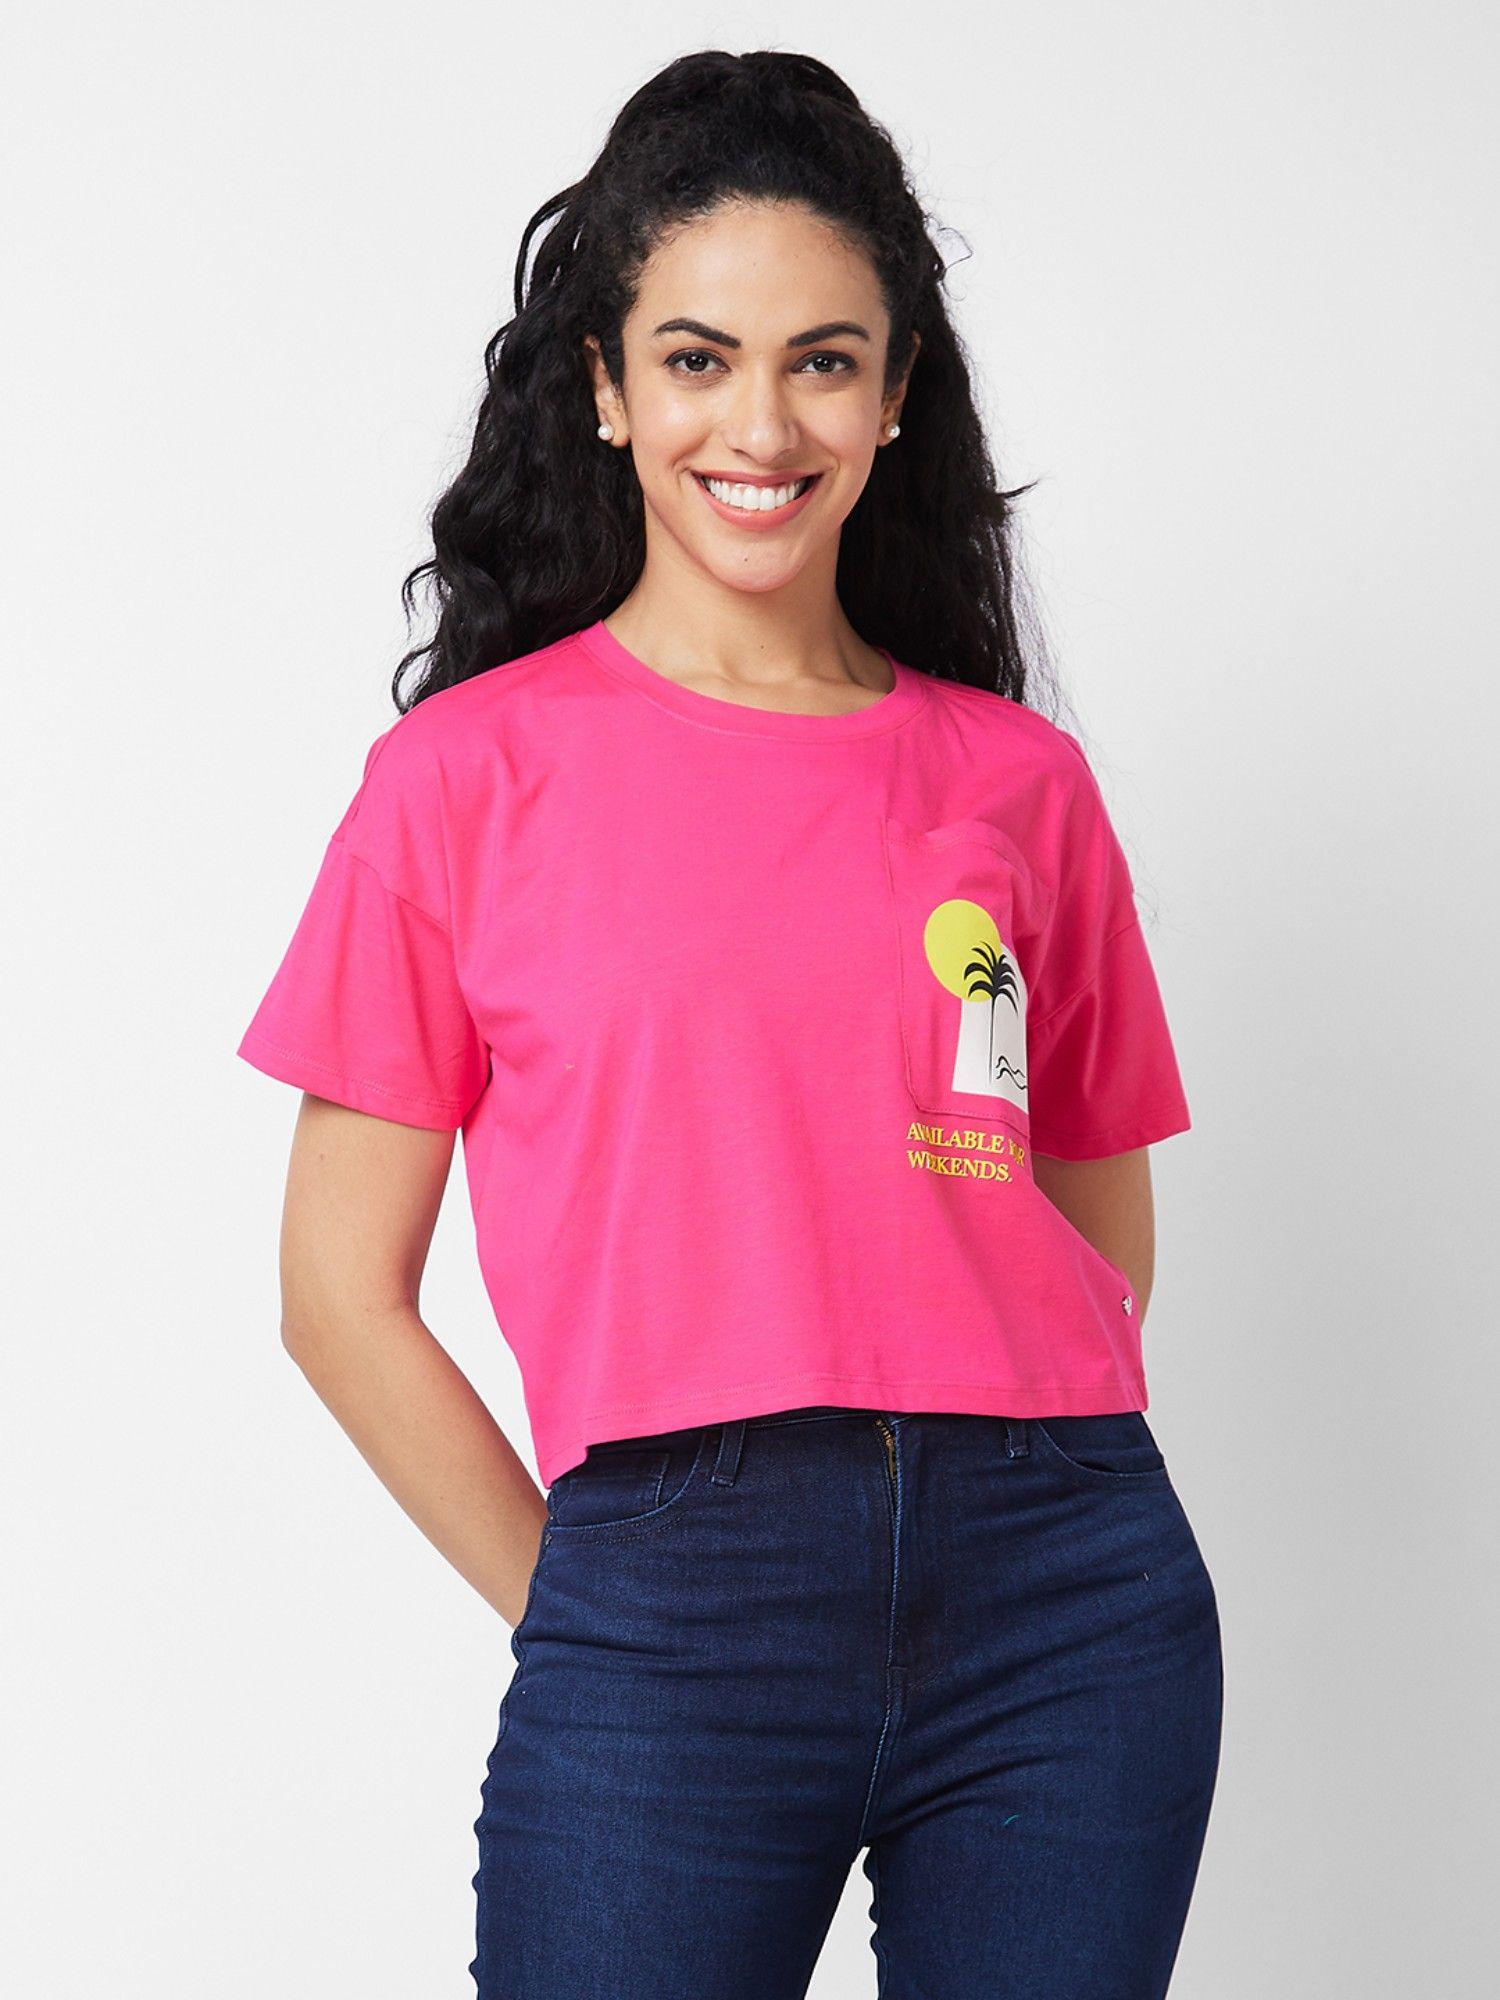 women round neck half sleeves pink t-shirt